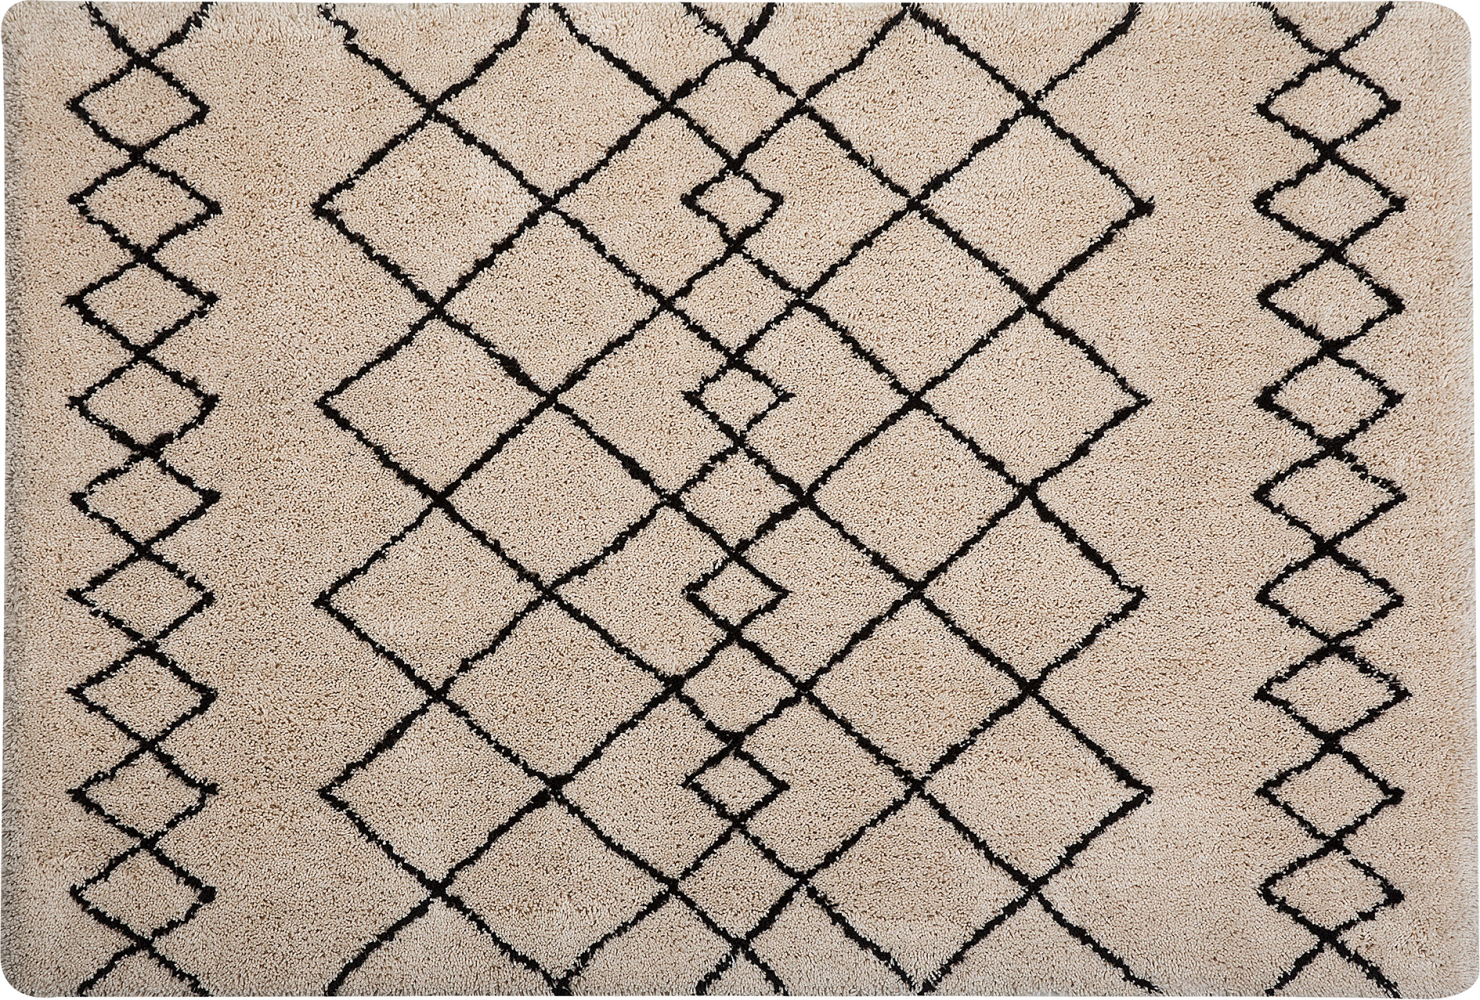 Teppich beige schwarz 140 x 200 cm Shaggy HAVSA Bild 1